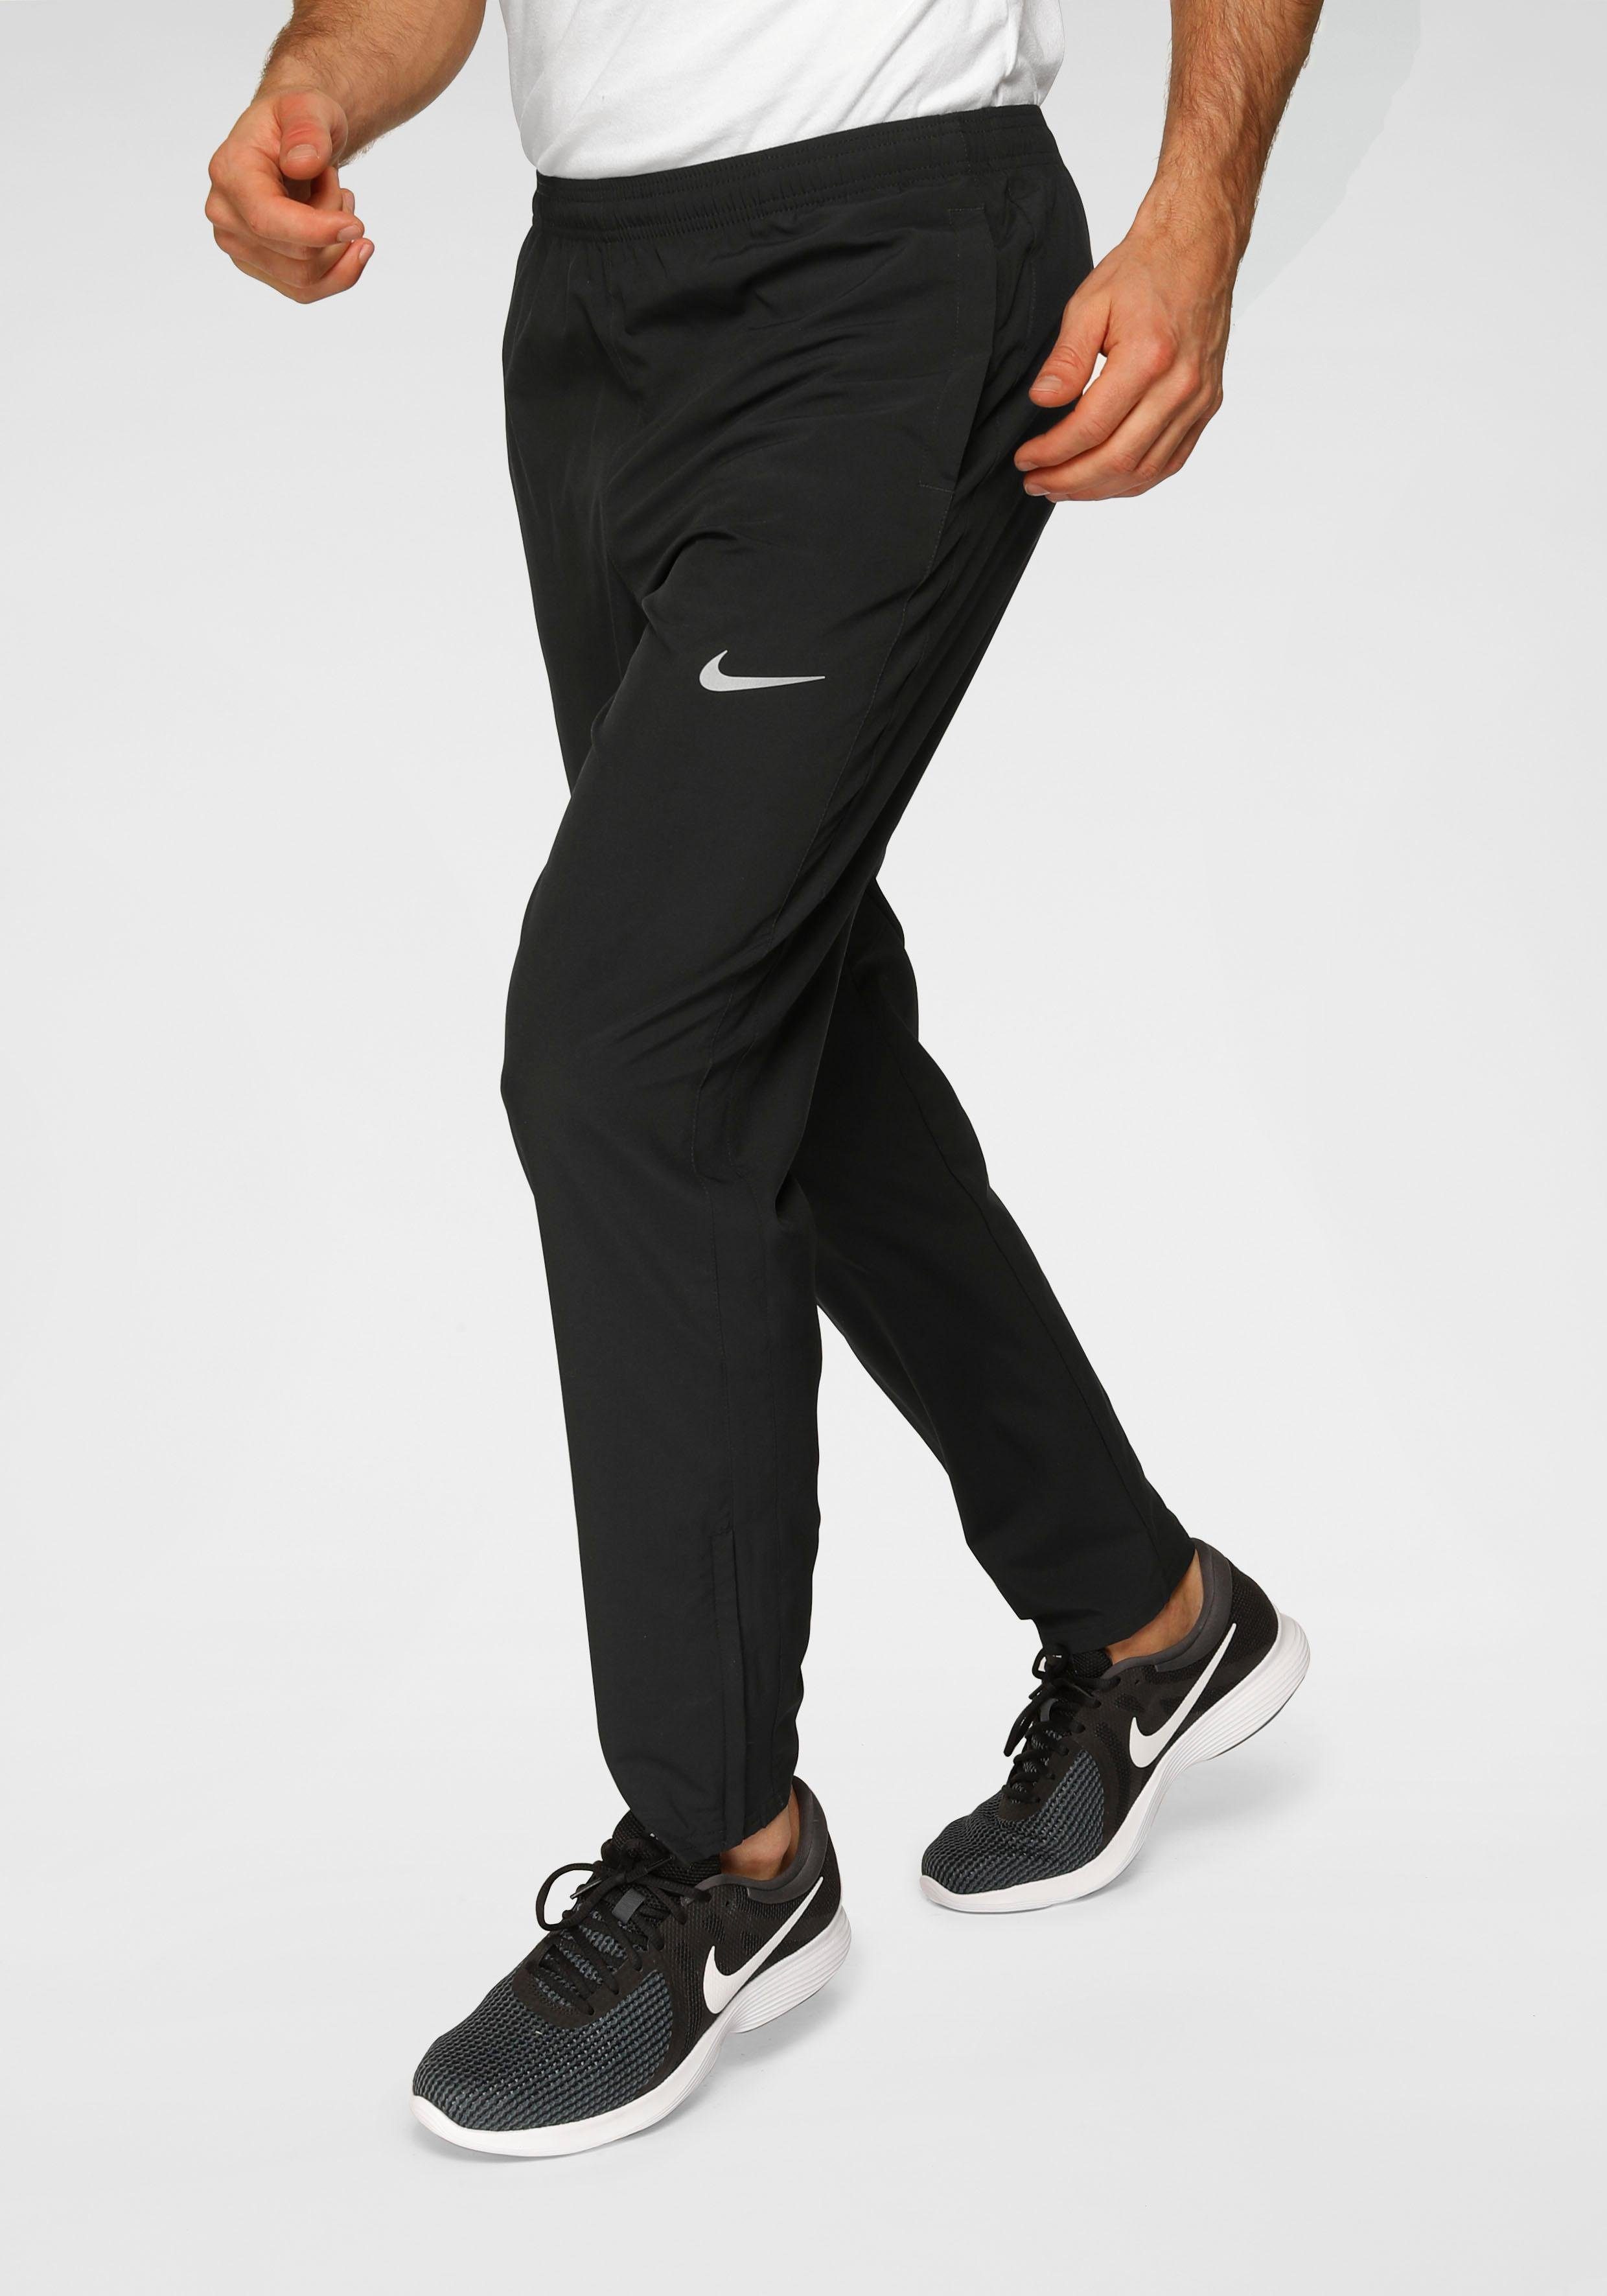 klok ik zal sterk zijn adopteren Nike Sportbroek heren online kopen | Shop nu | OTTO